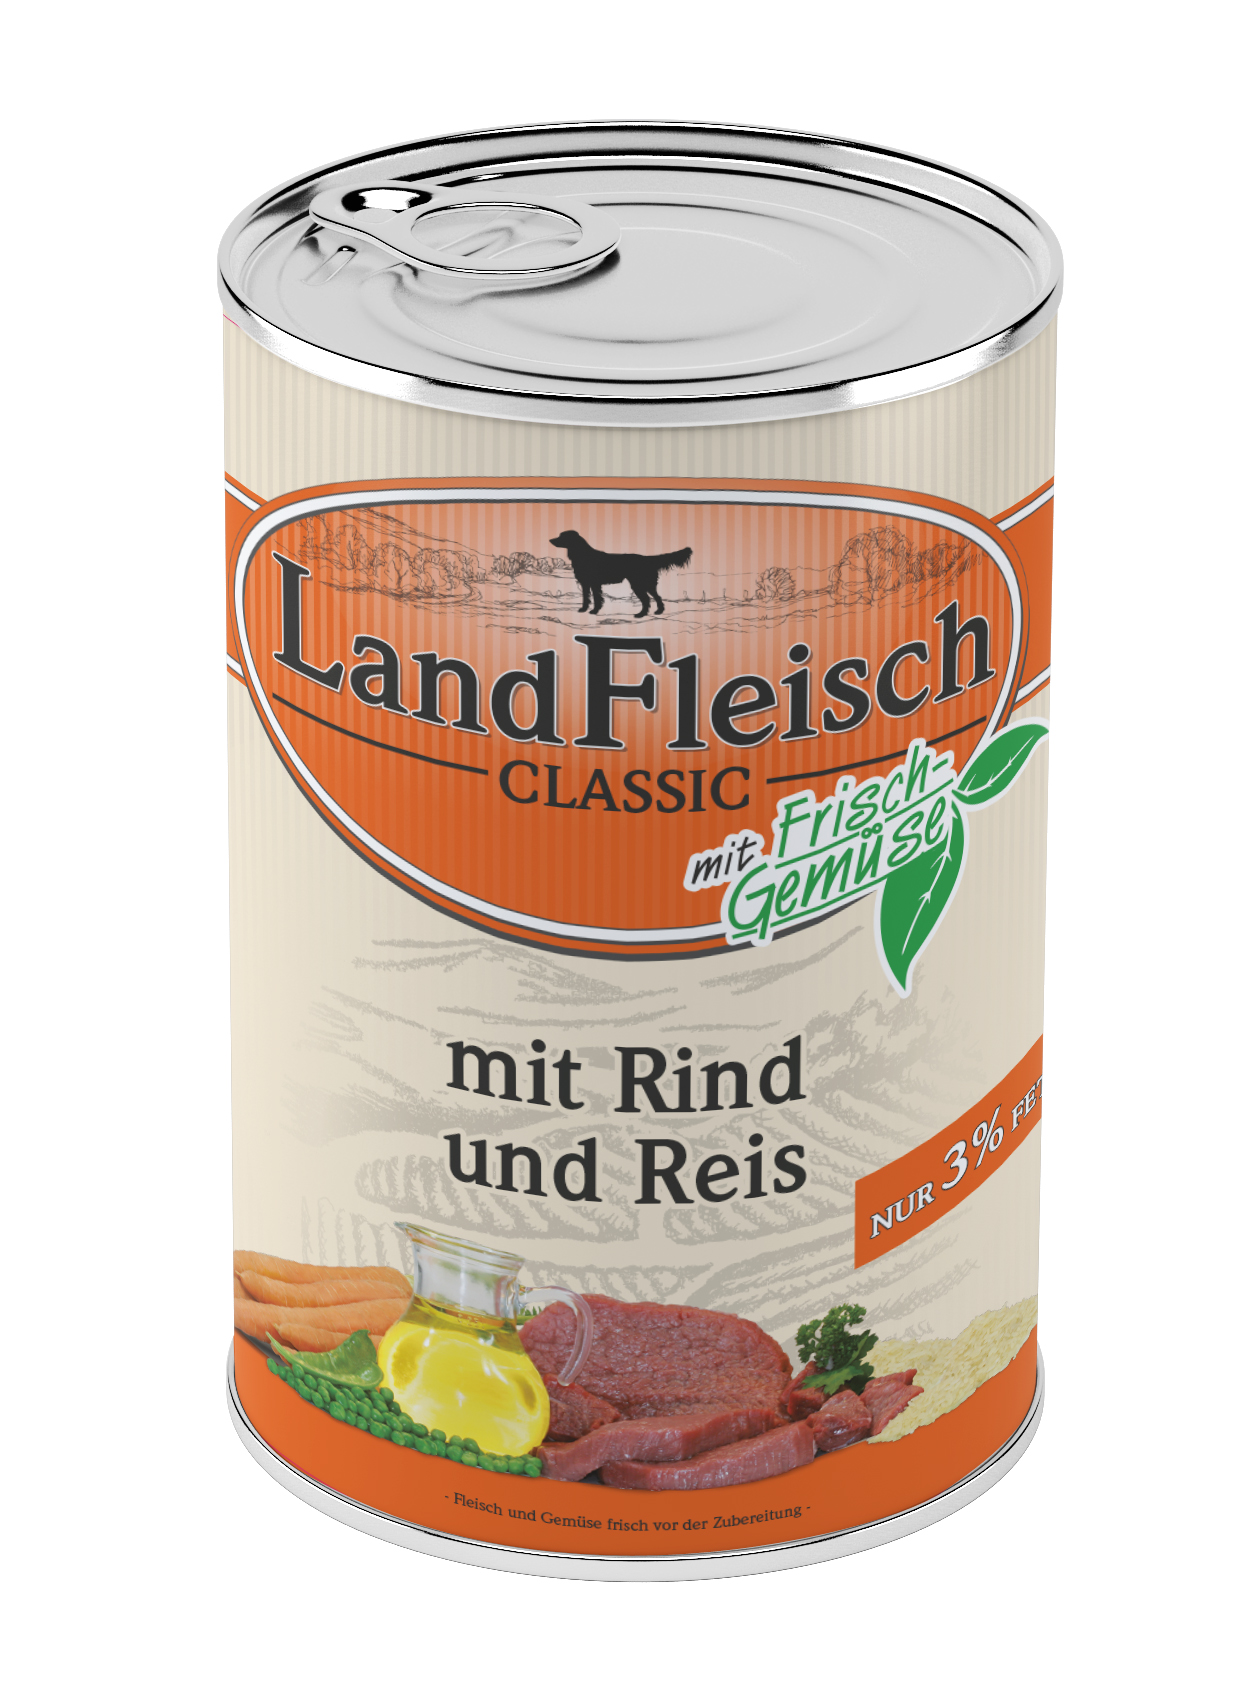 LandFleisch Classic Rind & Reis extra mager mit Frischgemüse 400g